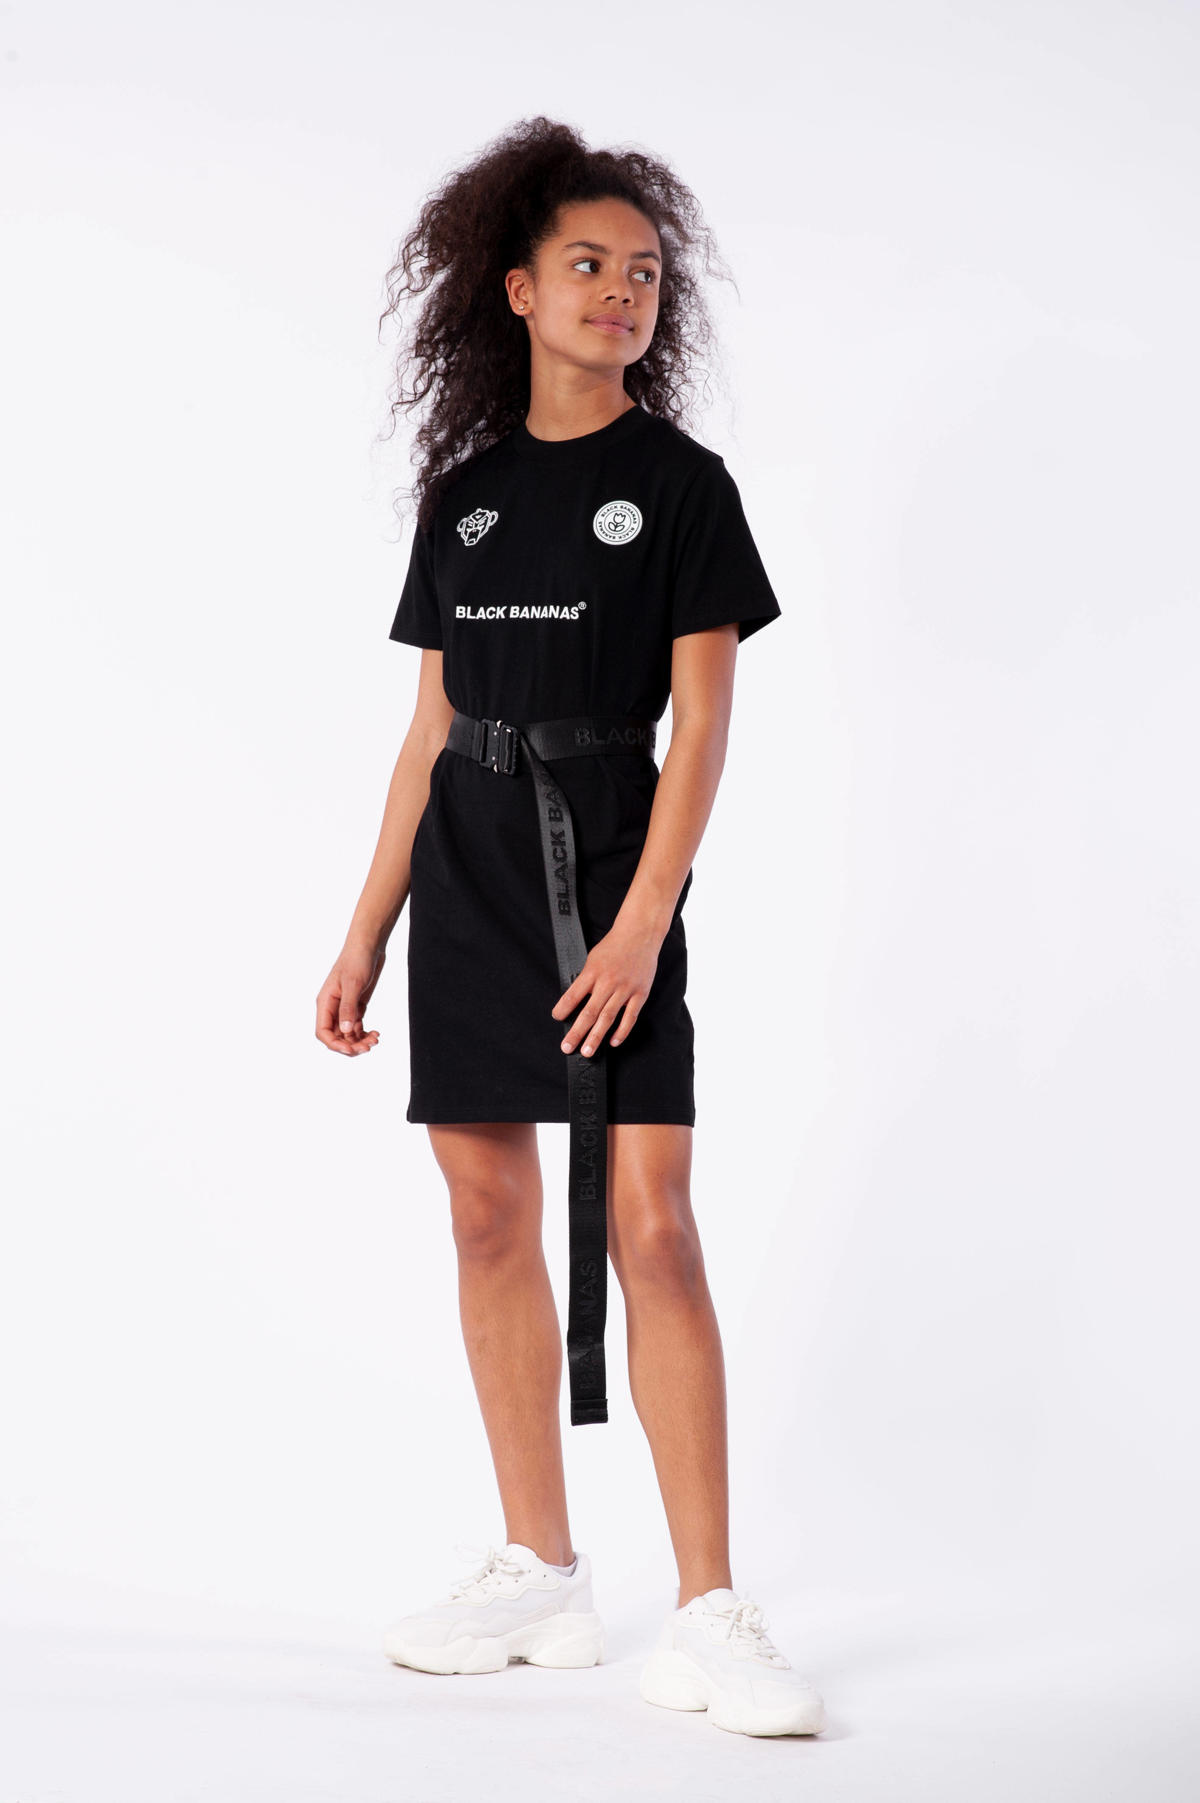 Voordracht Hechting Deens BLACK BANANAS jurk met logo zwart | wehkamp